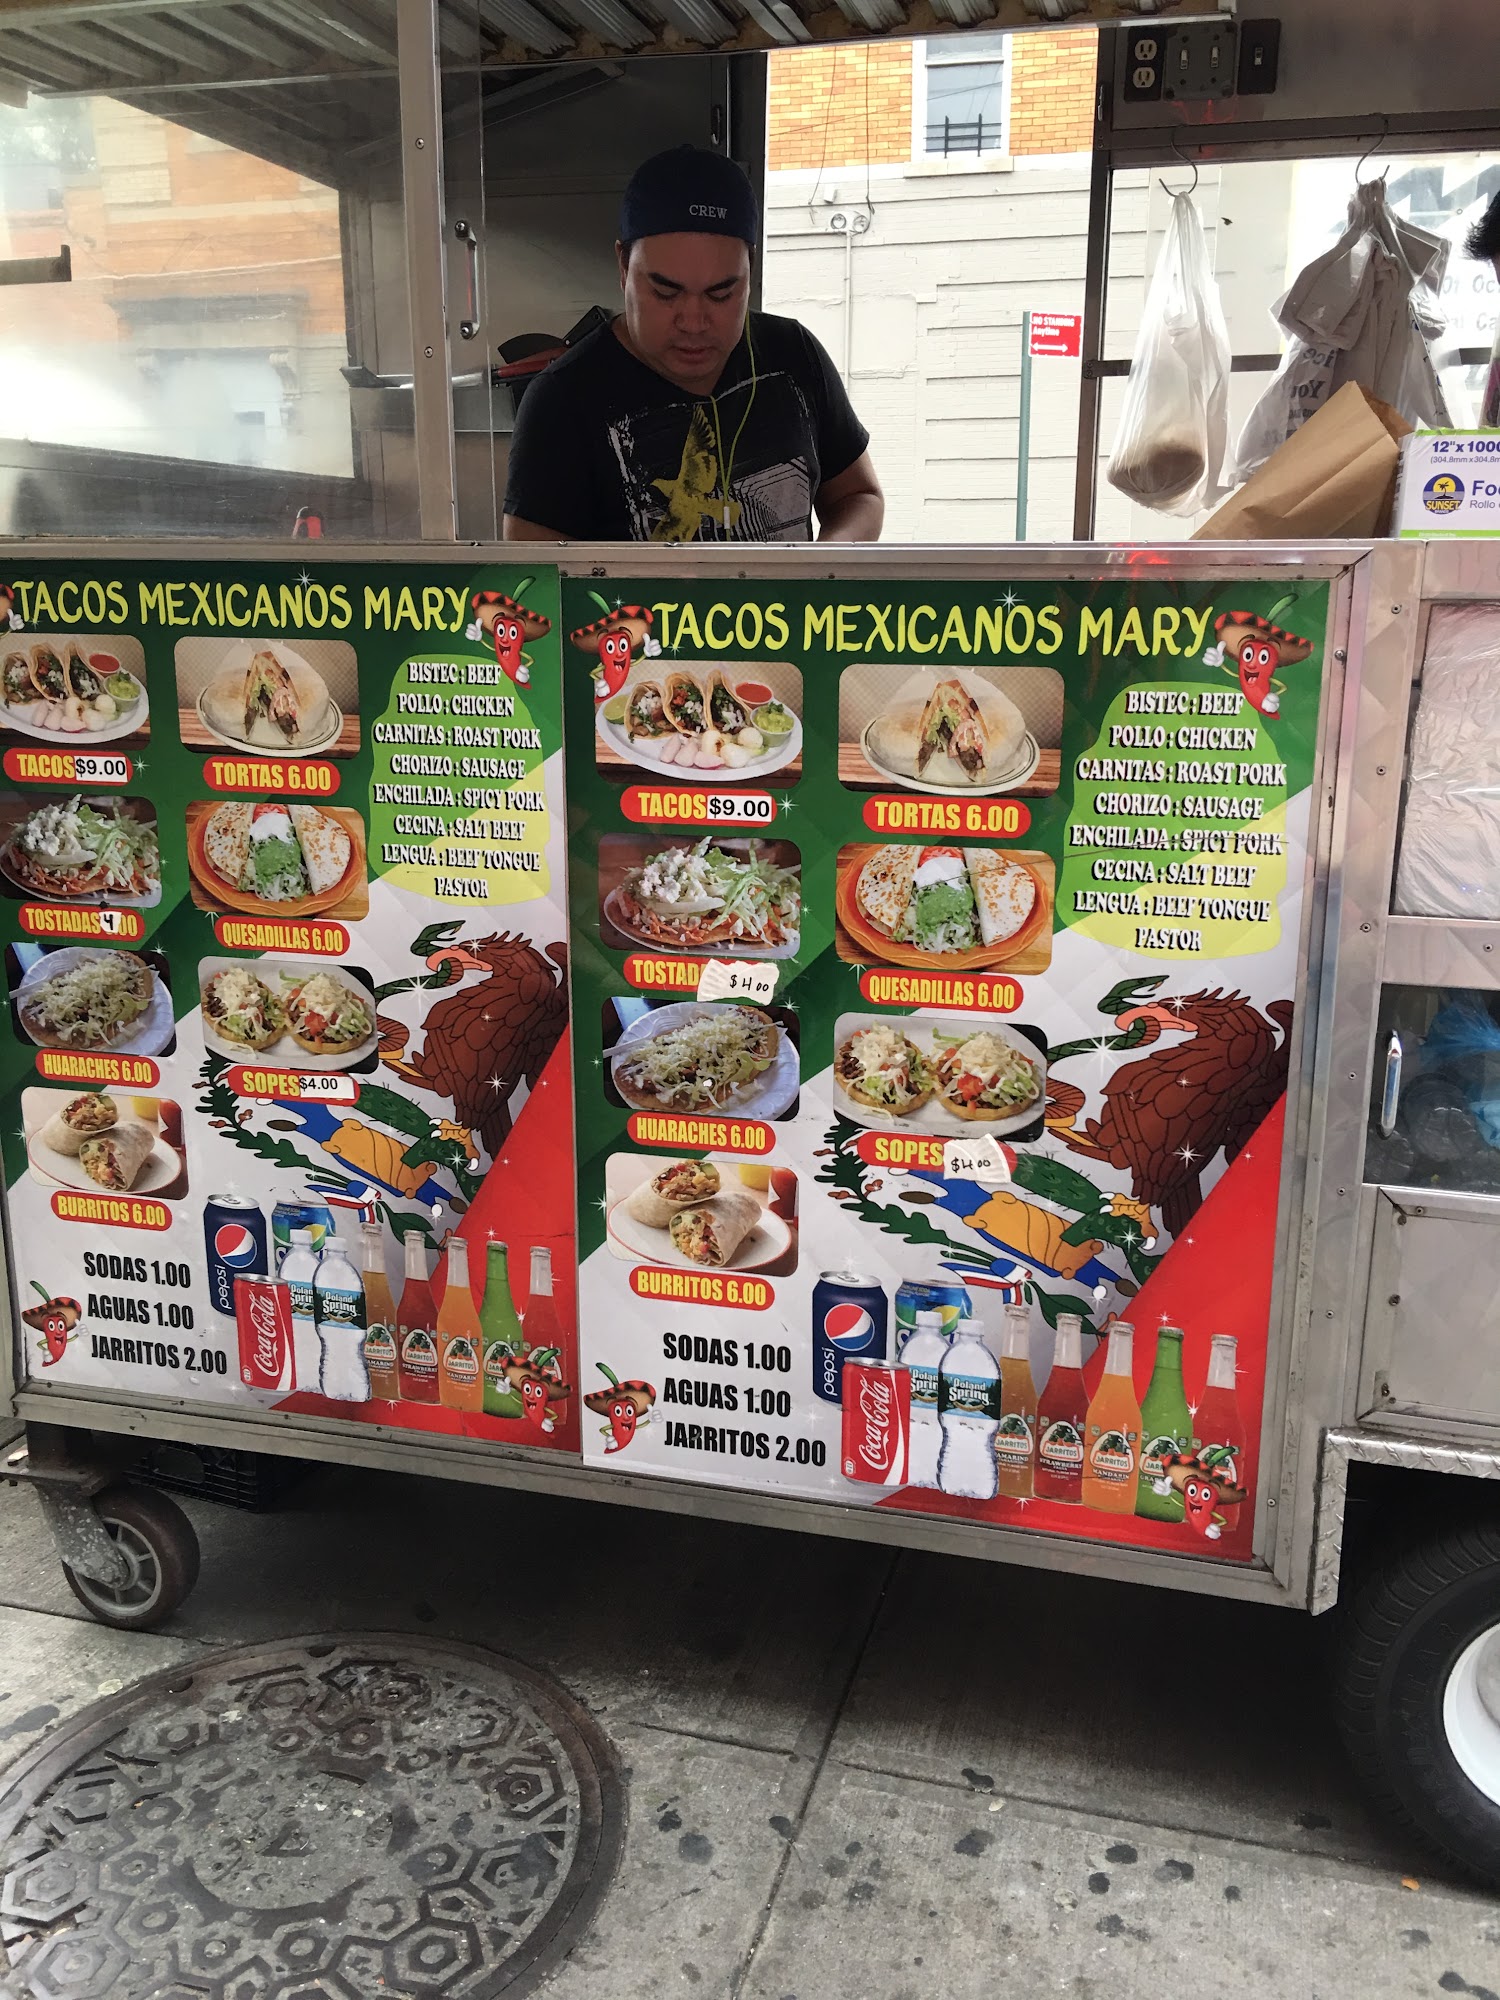 Tacos Mexicanos Mary